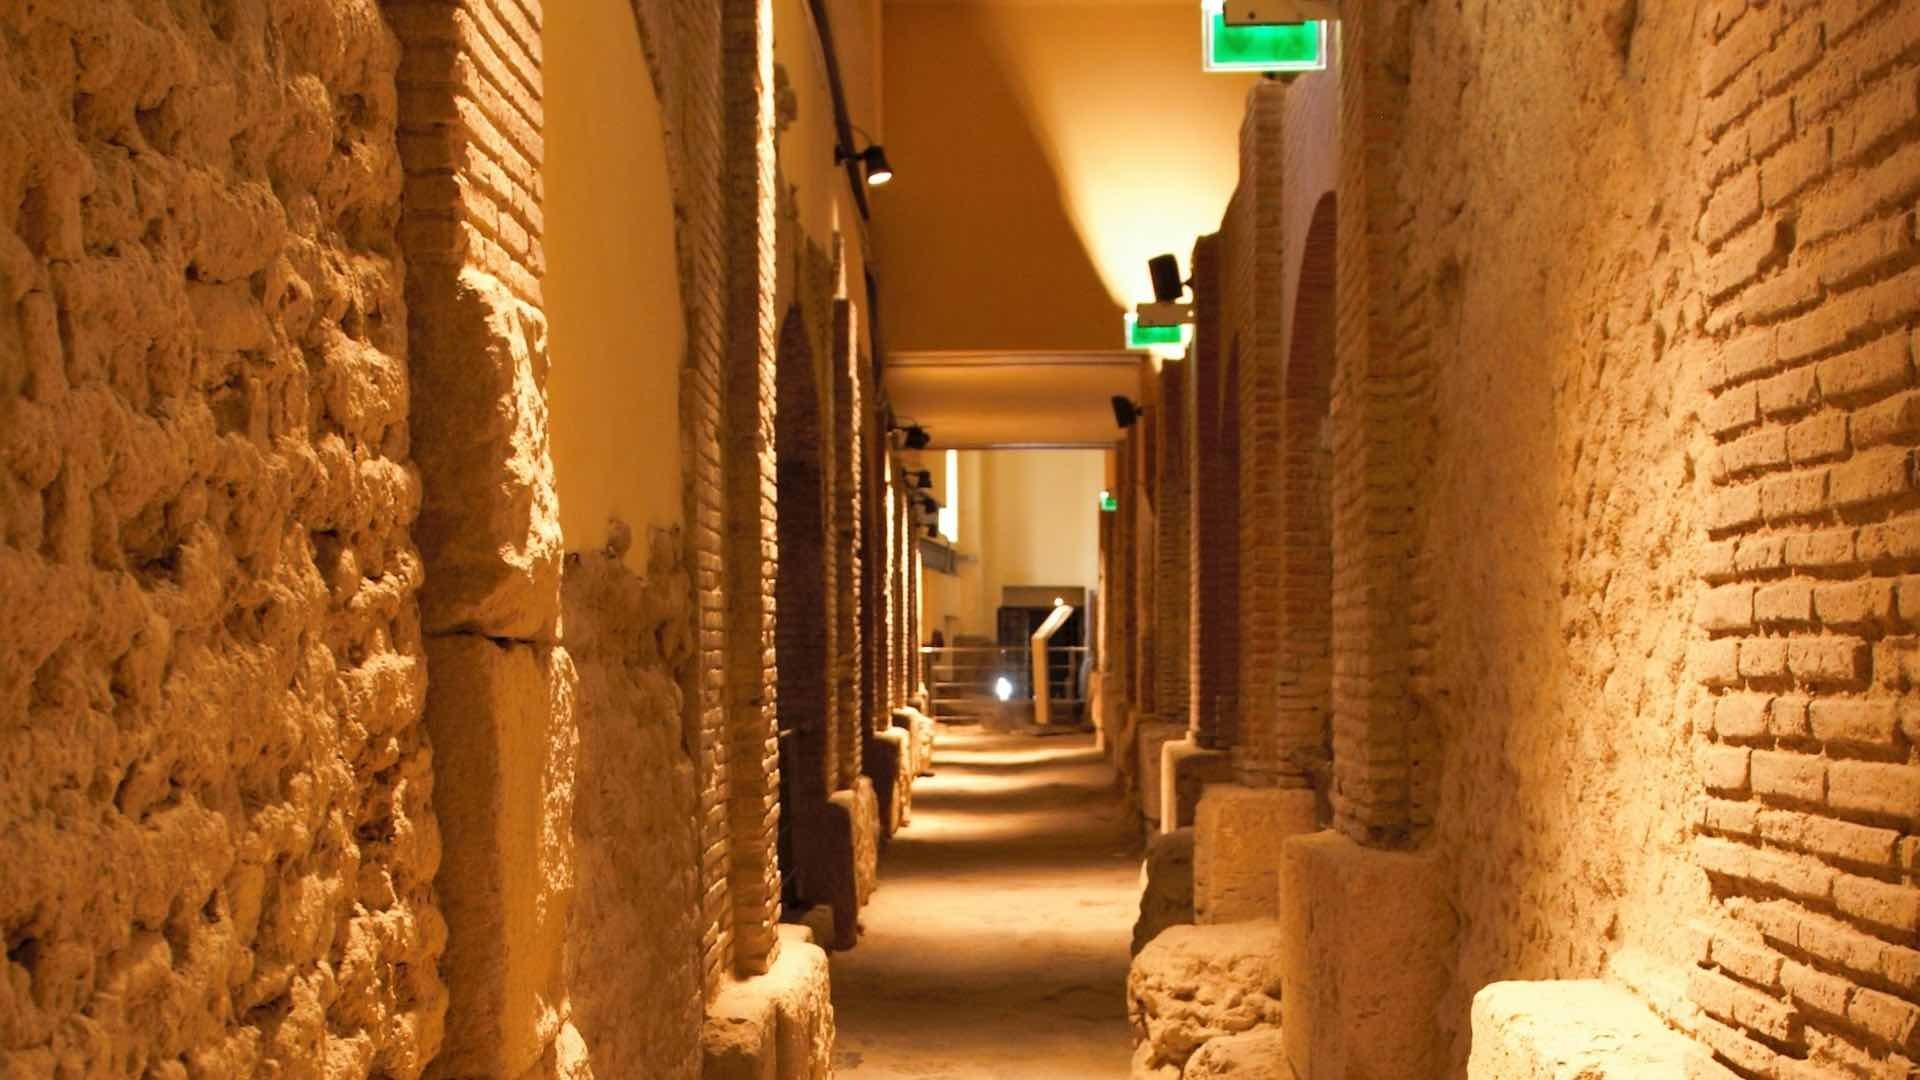 domenica museo siti archeologici aperti pubblico ingresso gratuito 